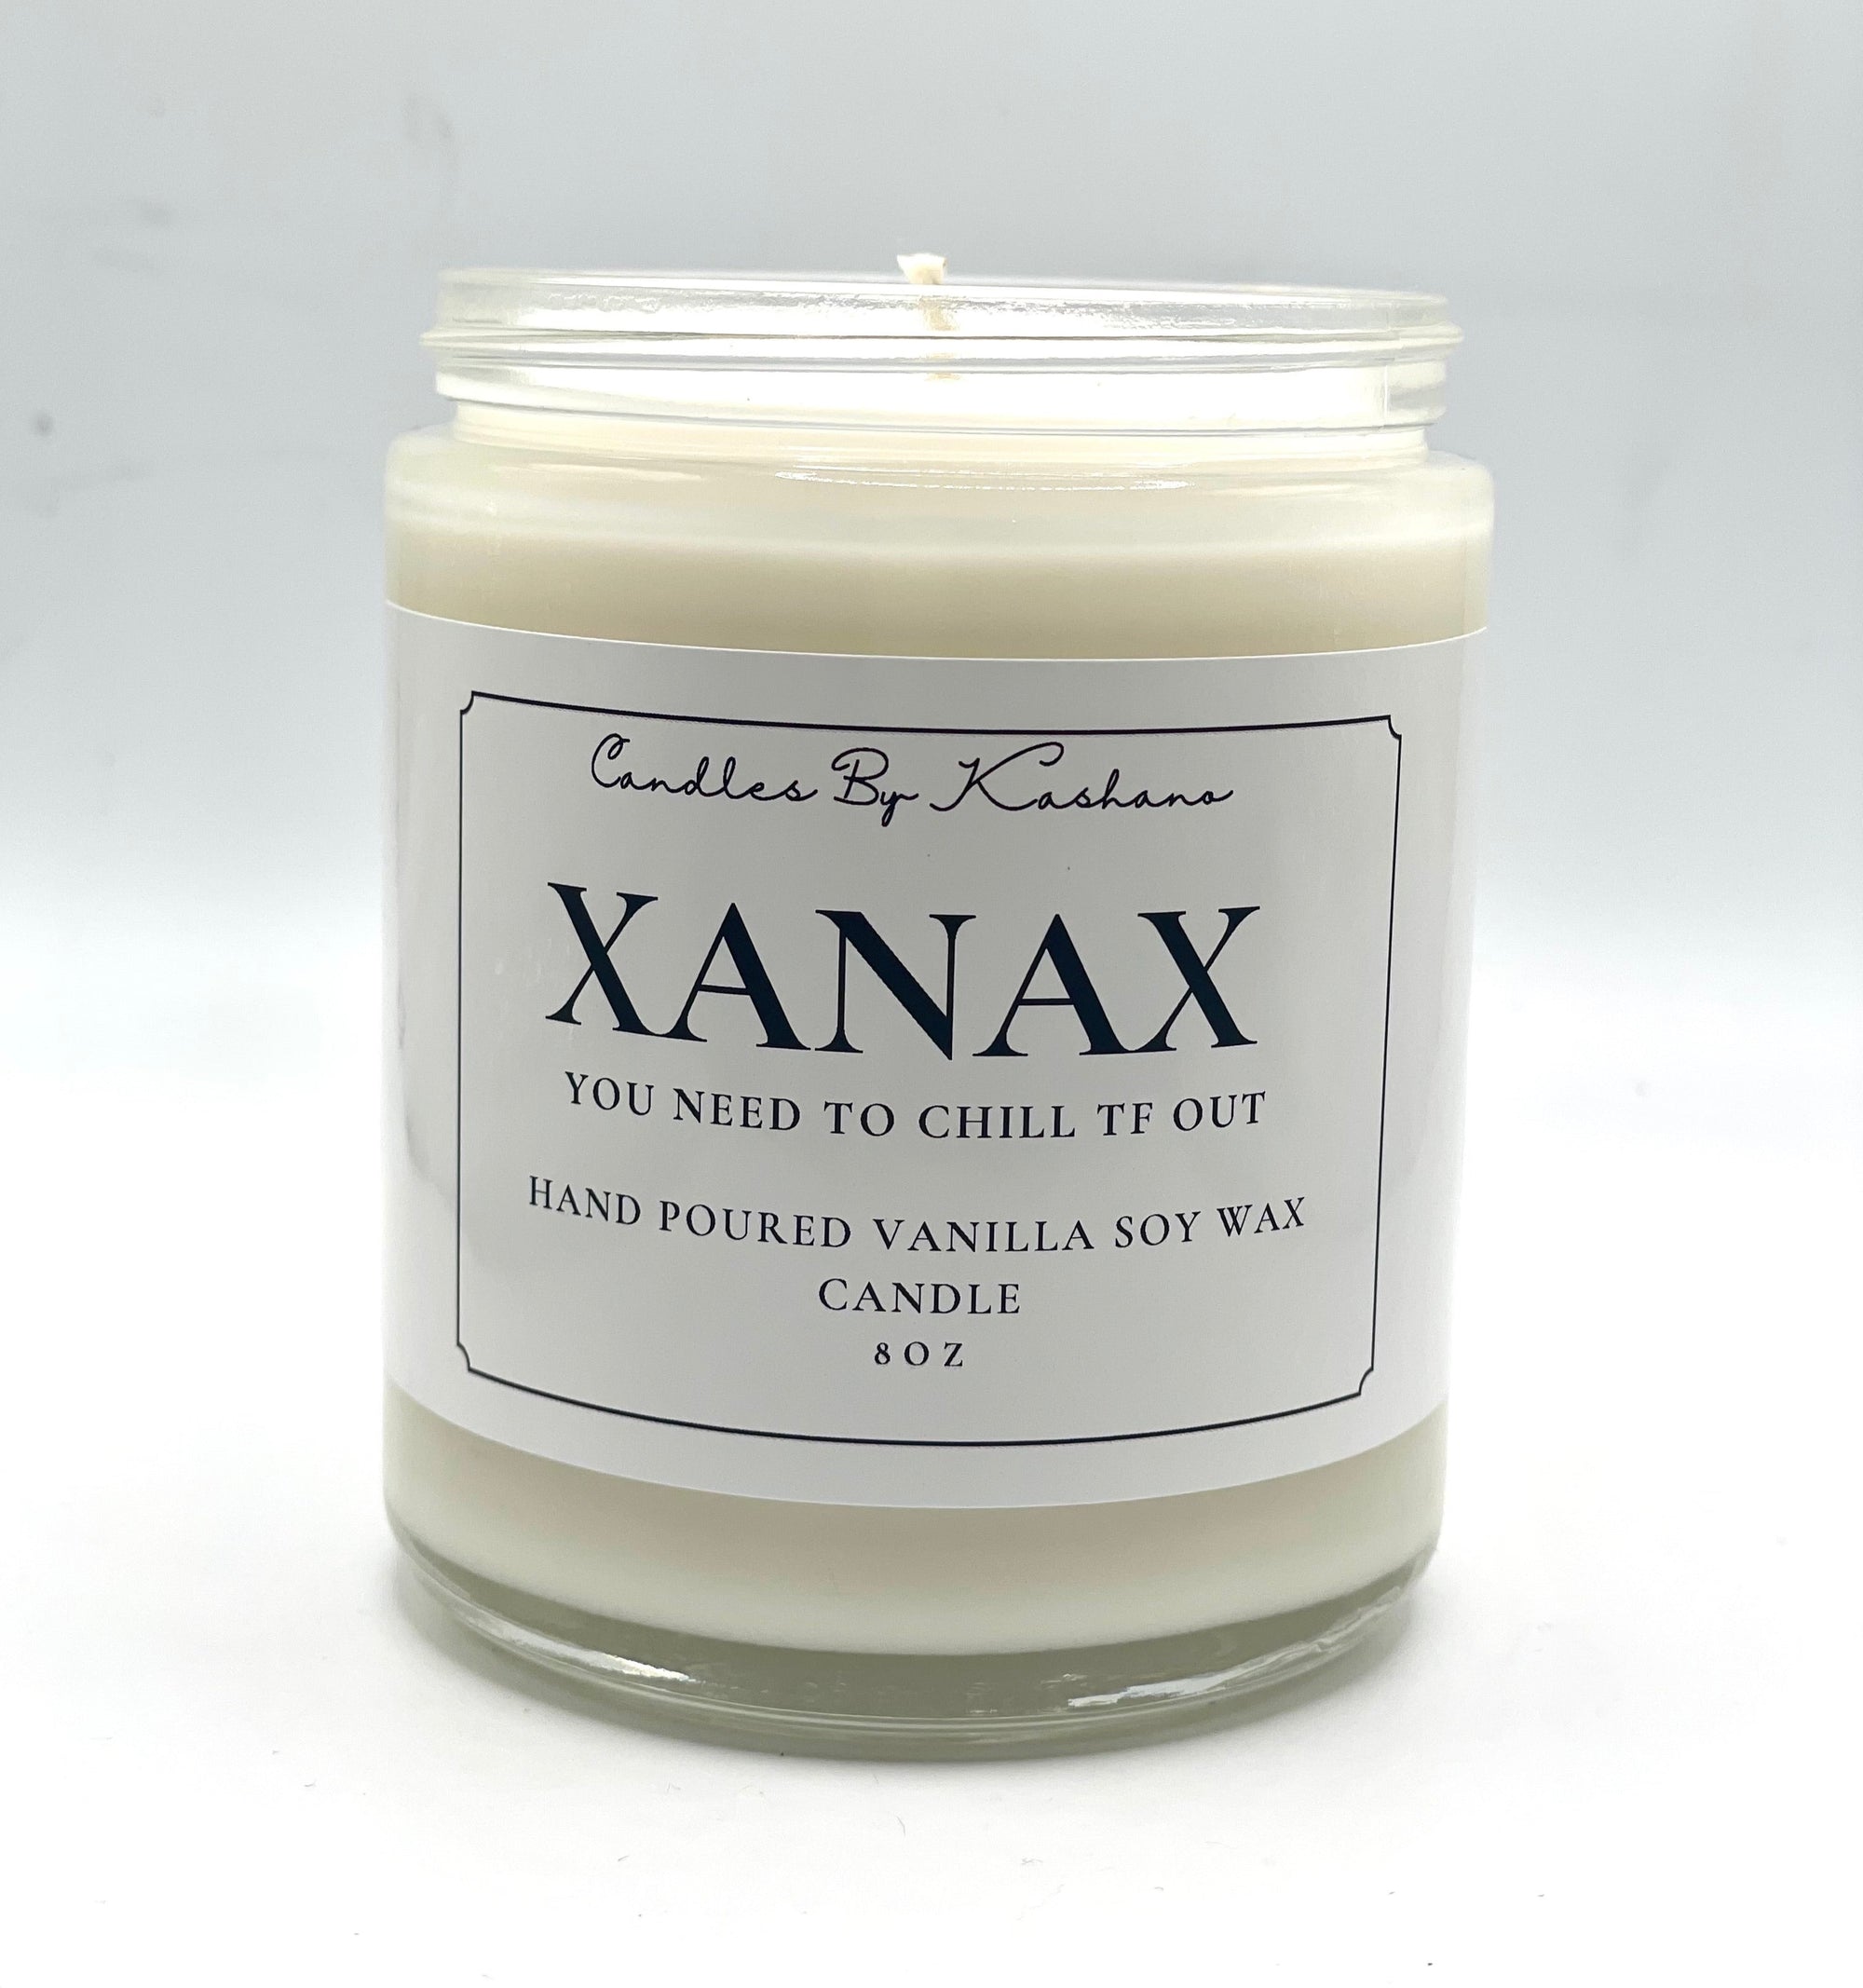 Xanax Candle - Cinnamon Vanilla